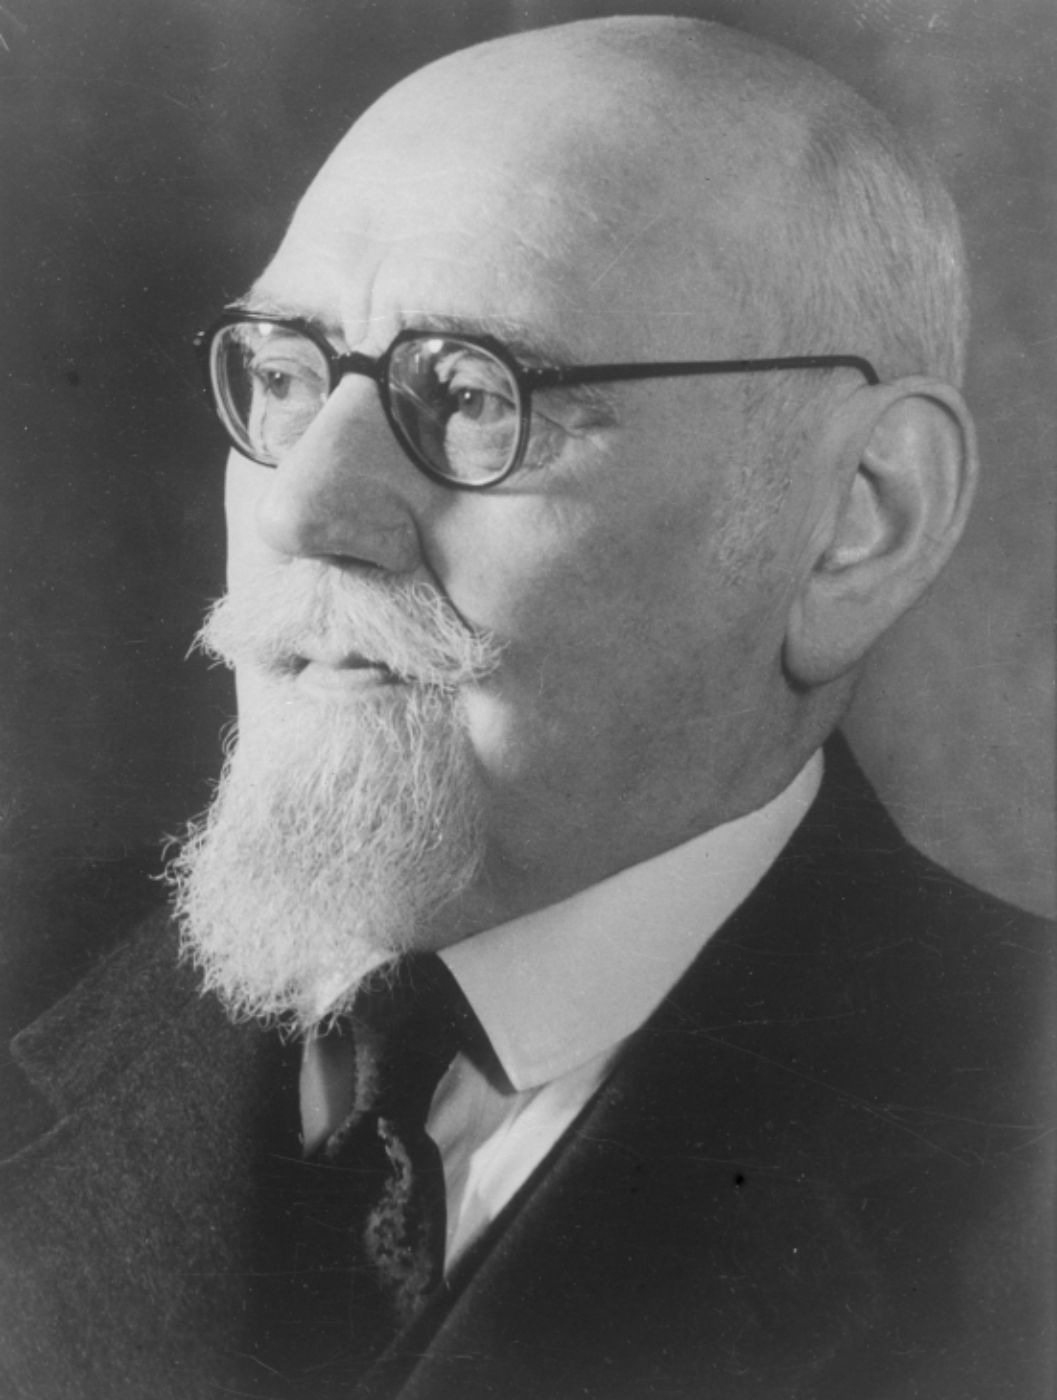 Schwarz-weiß-Portrait von Dr. Karl Renner. Er trägt eine Brille und einen Bart.